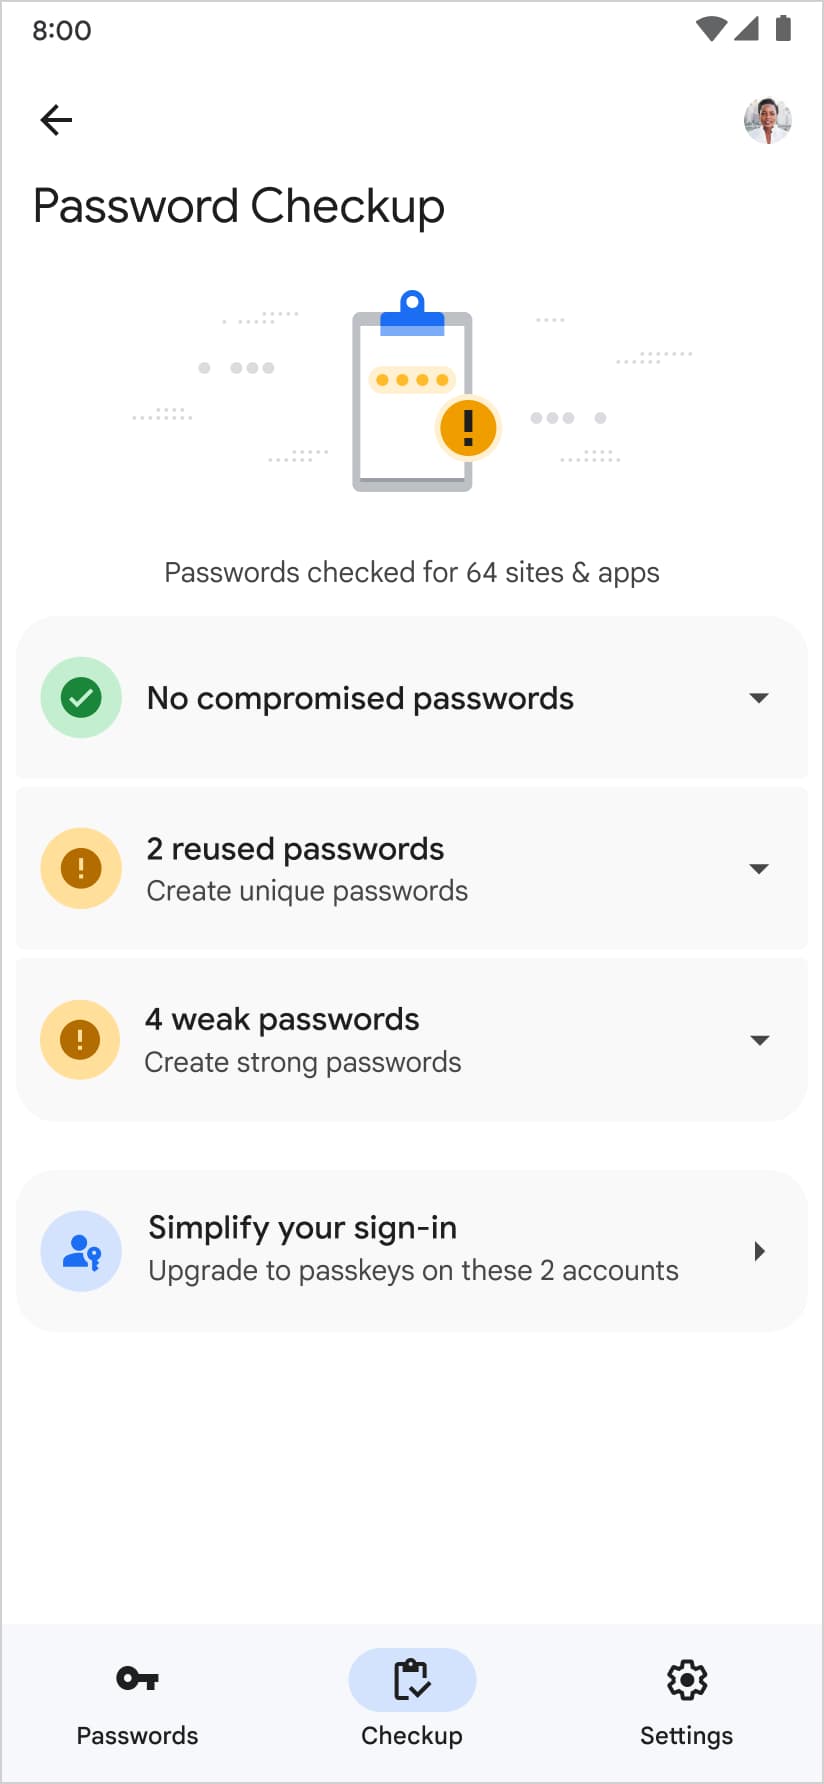 Google 密碼管理工具也會建議您在密碼安全檢查頁面建立密碼金鑰。